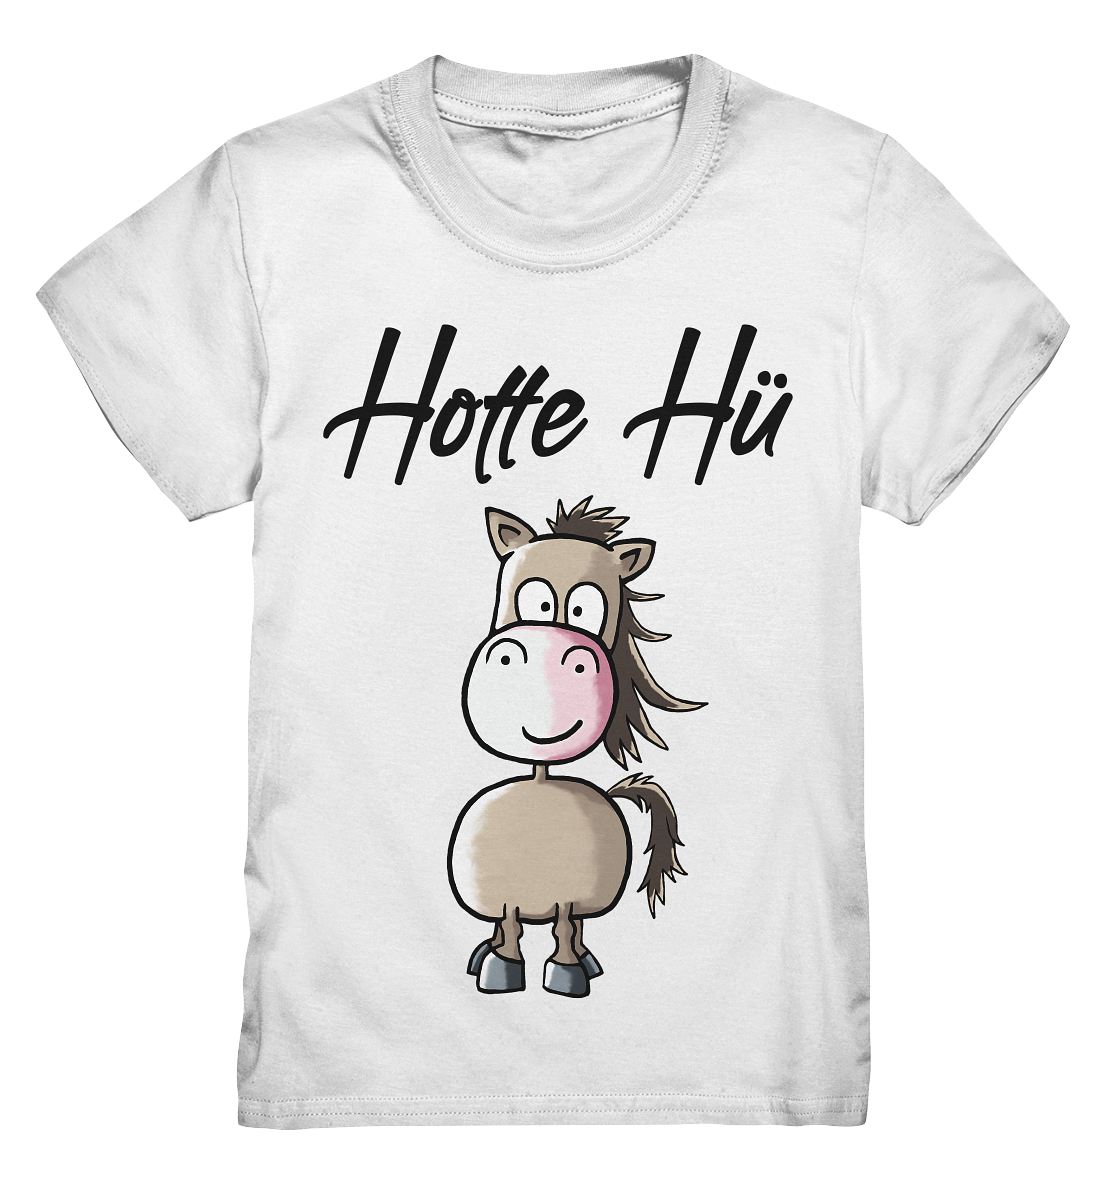 Hotte Hü. Kleines braunes Pferd. - Kids Premium Shirt